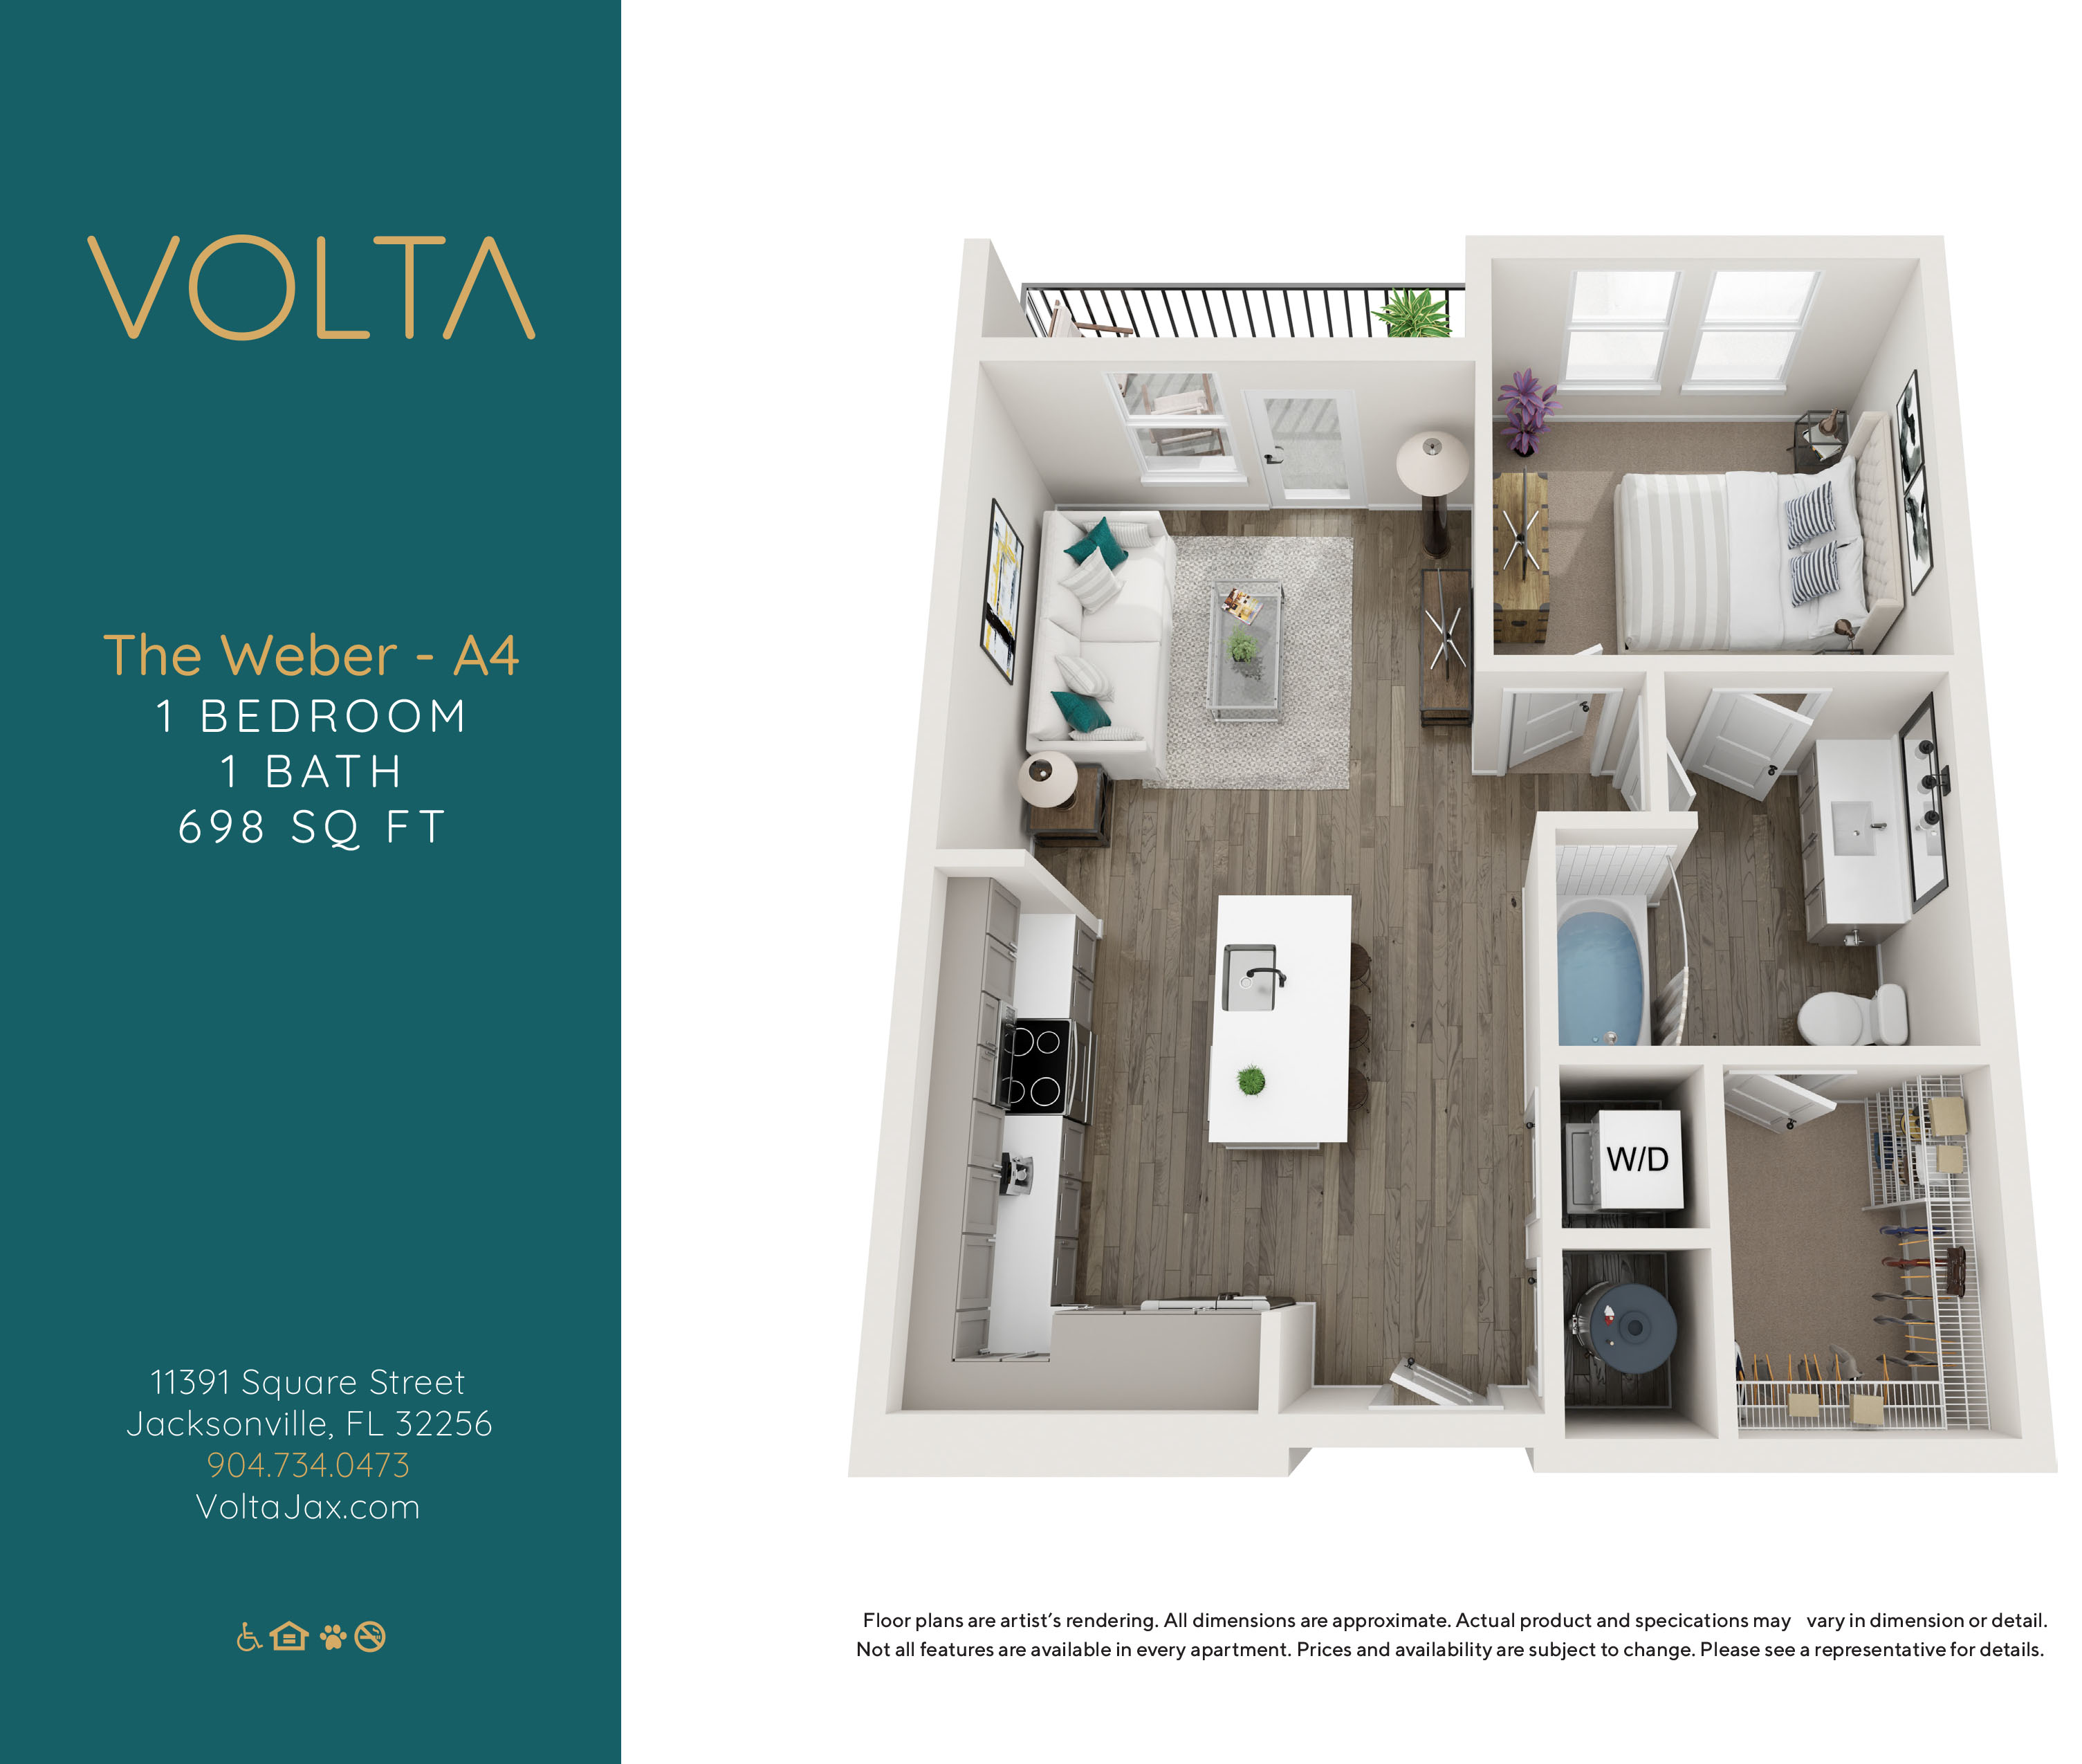 Volta - A4 - The Weber-1